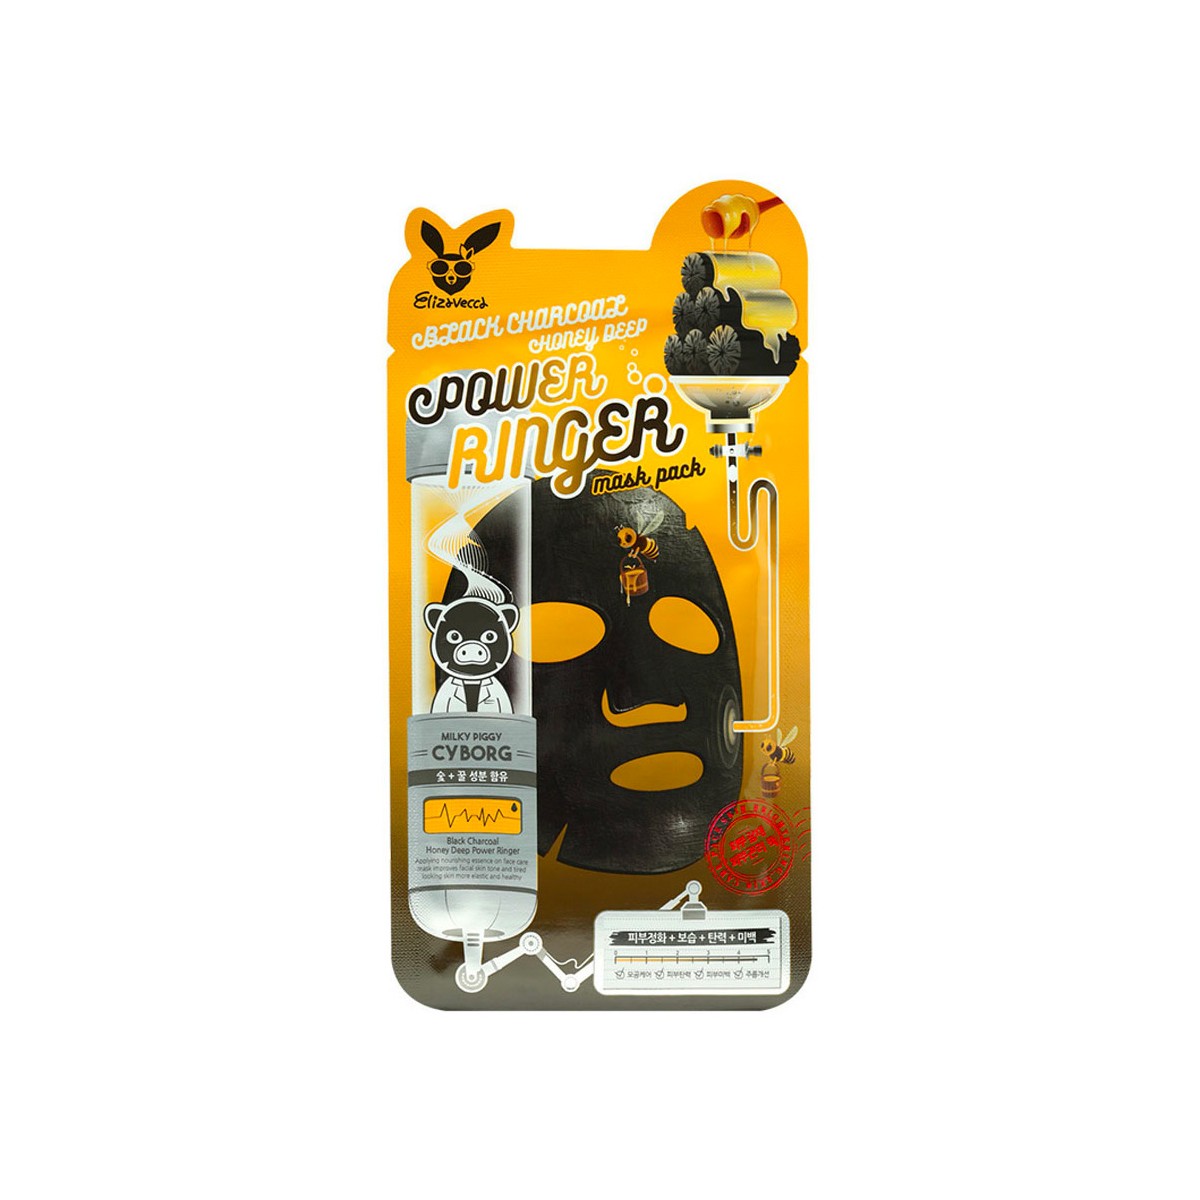 Mascarillas Coreanas de Hoja al mejor precio: Elizavecca Black Charcoal Honey Deep Power Ringer Mask Pack de Elizavecca en Skin Thinks - Tratamiento Anti-Manchas 